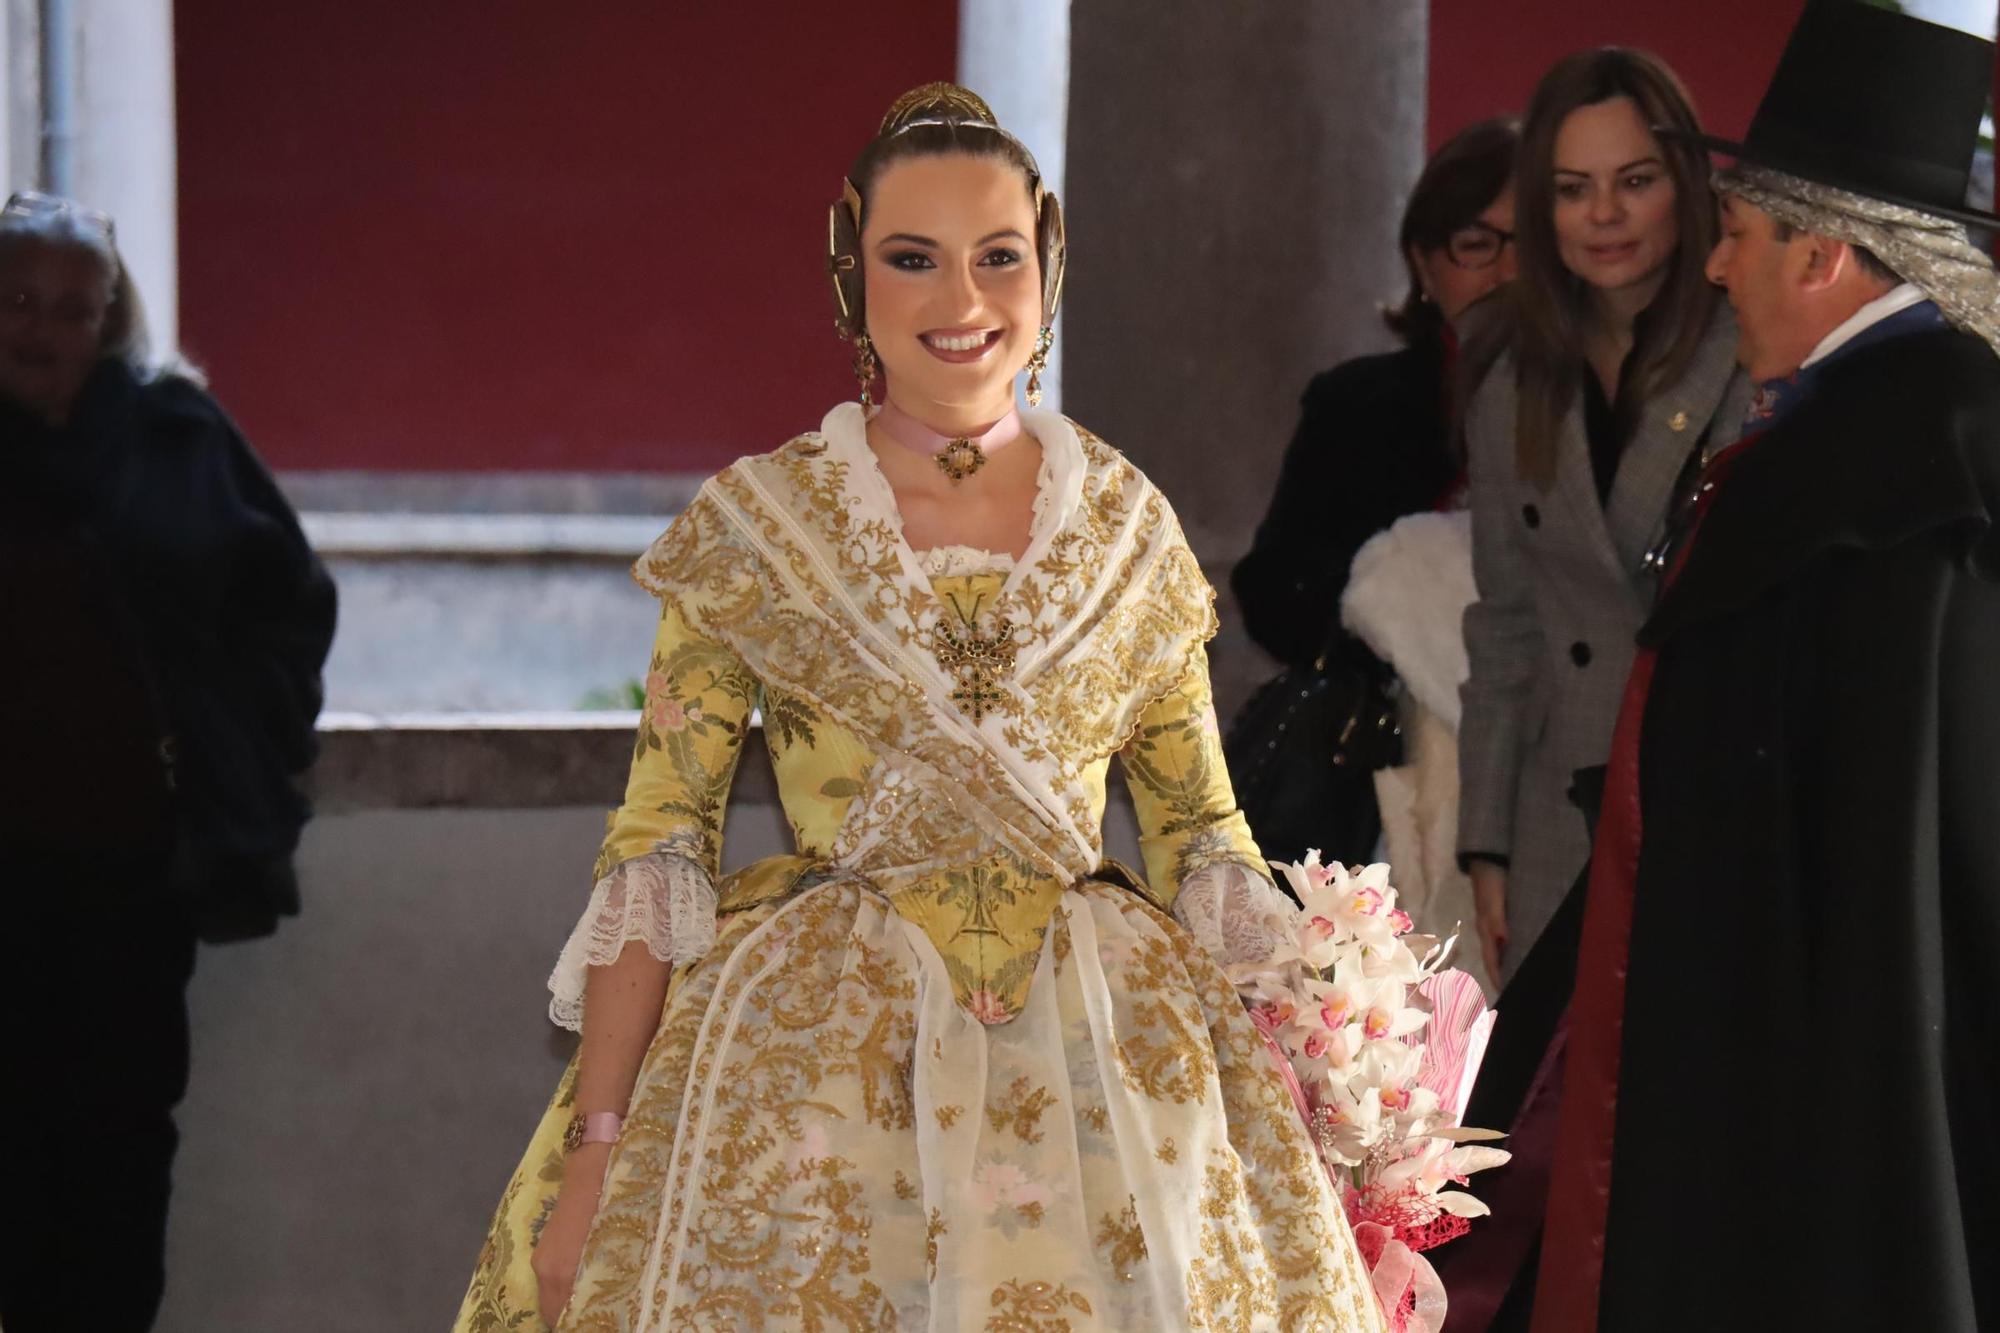 María Estela y la corte estrenan año con las Fallas del Carmen